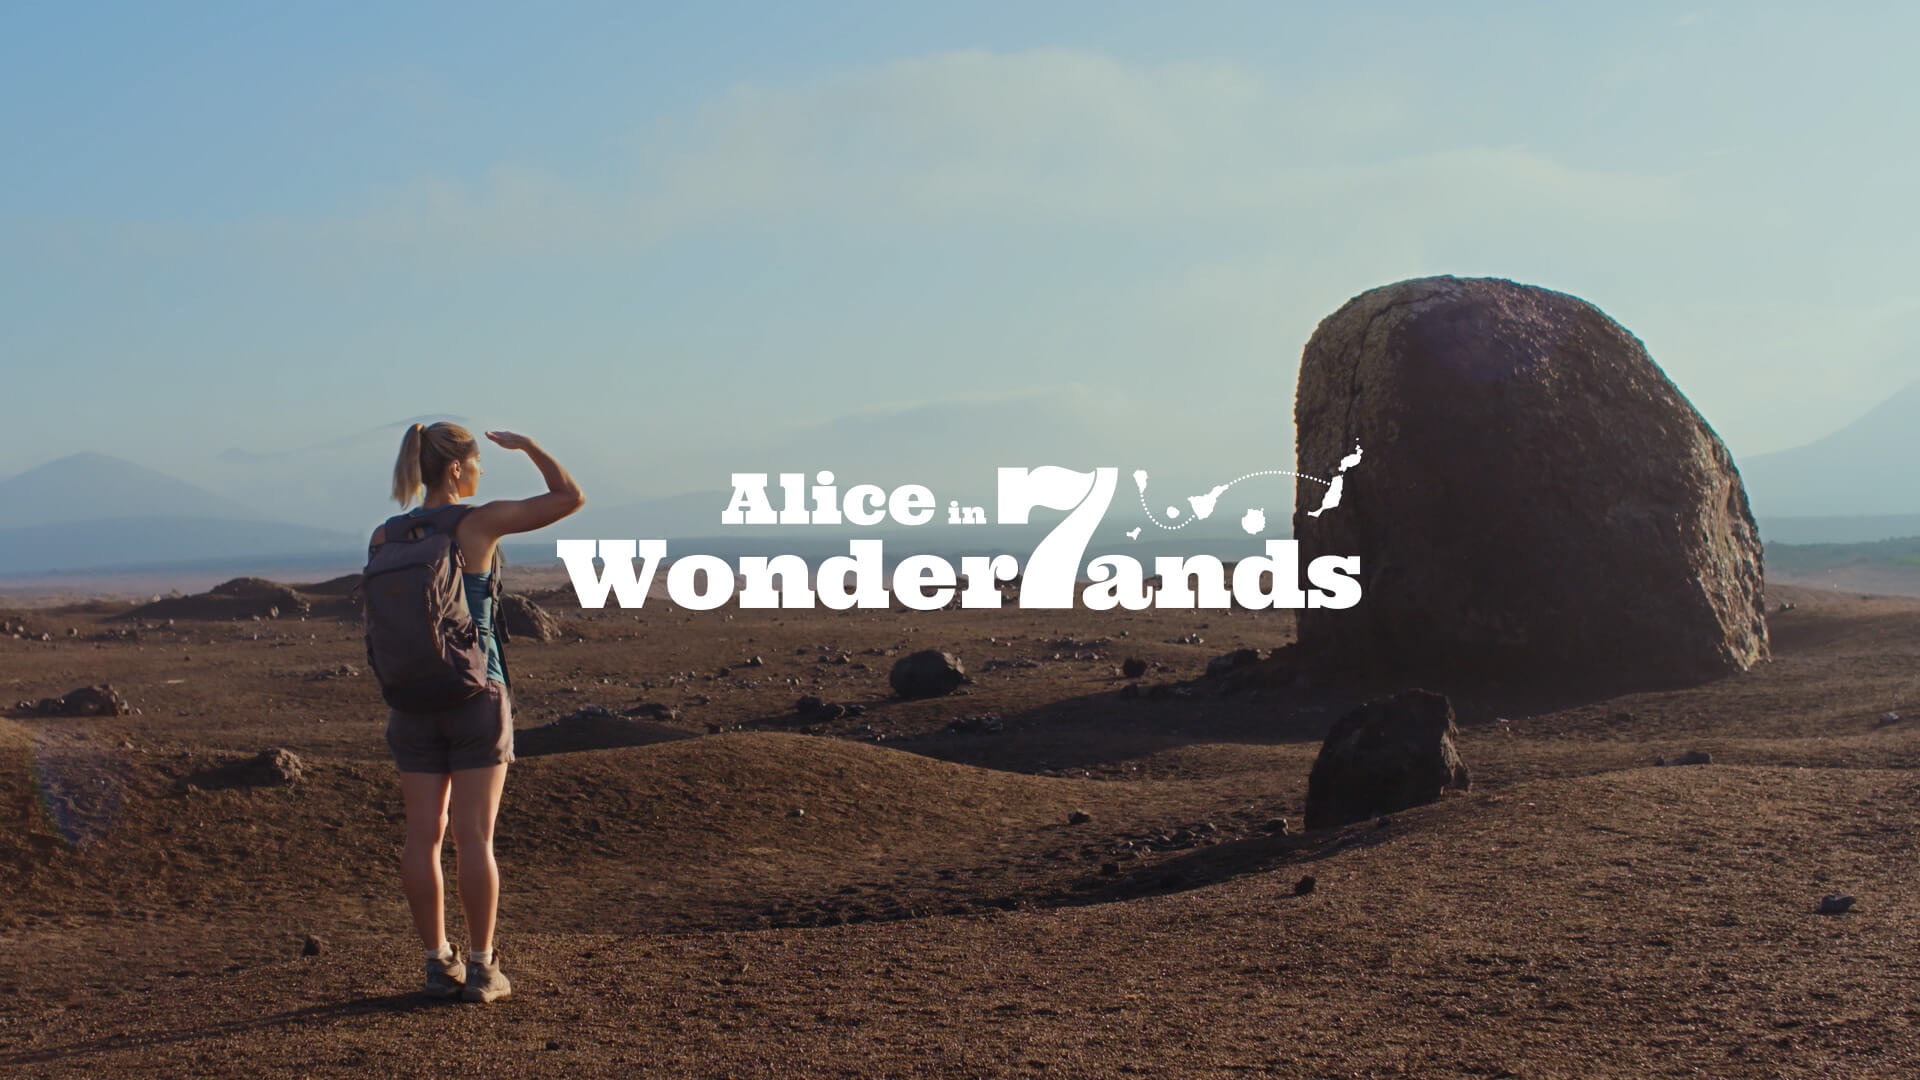 Alice in 7 wonderlands - Lanzarote